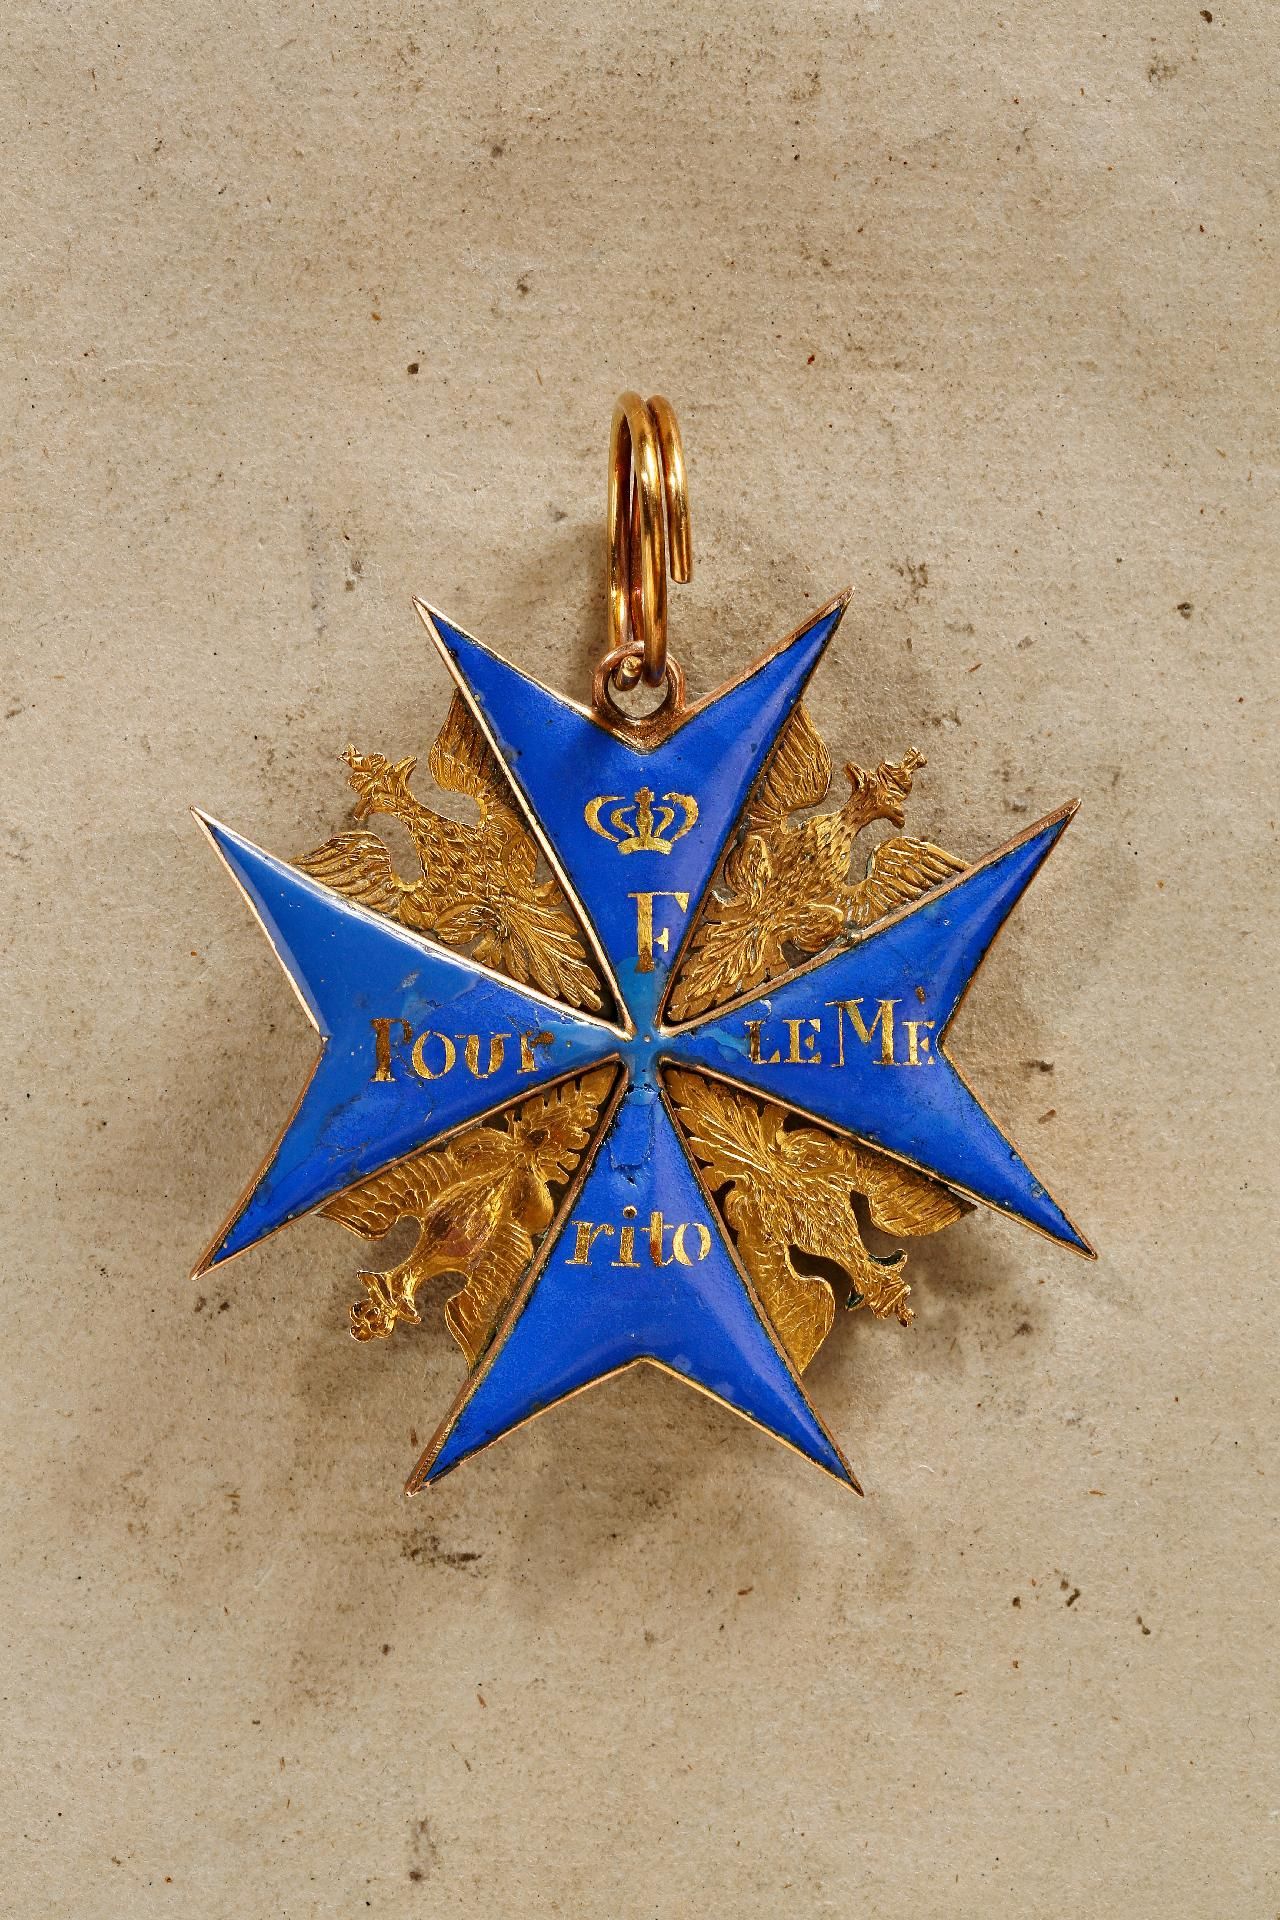 Preußen : Preußen, Orden Pour le Mérite: Bedeutendes Ordenskreuz russischer Fertigung aus der Ze... - Bild 3 aus 4